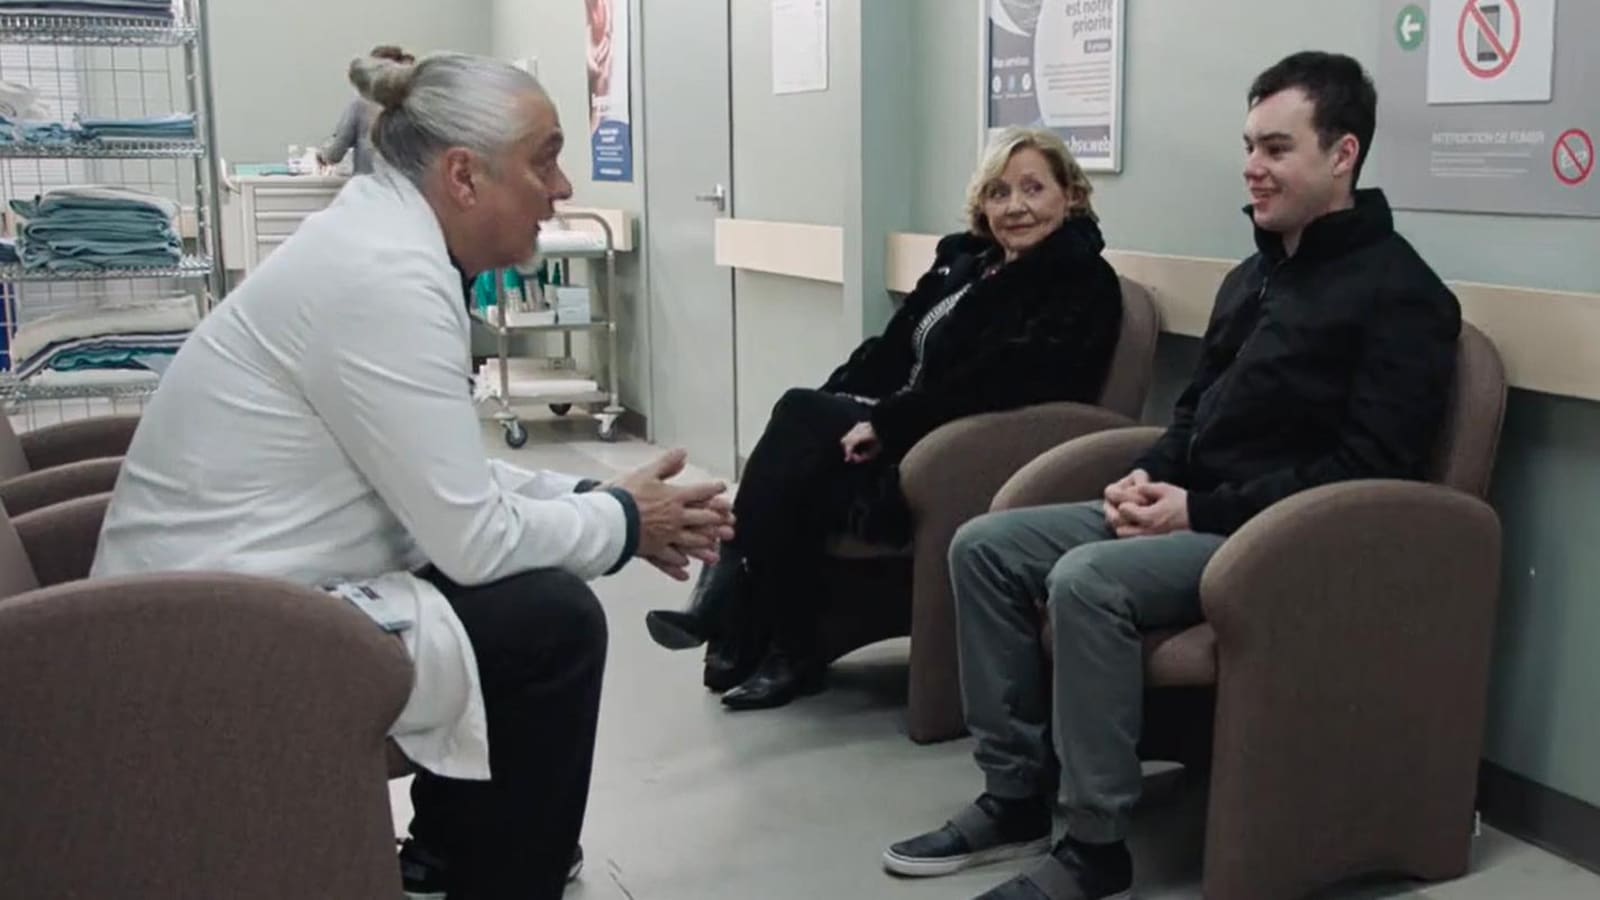 Pascal, Liliane et Siméon parlent dans un corridor de l'hôpital.